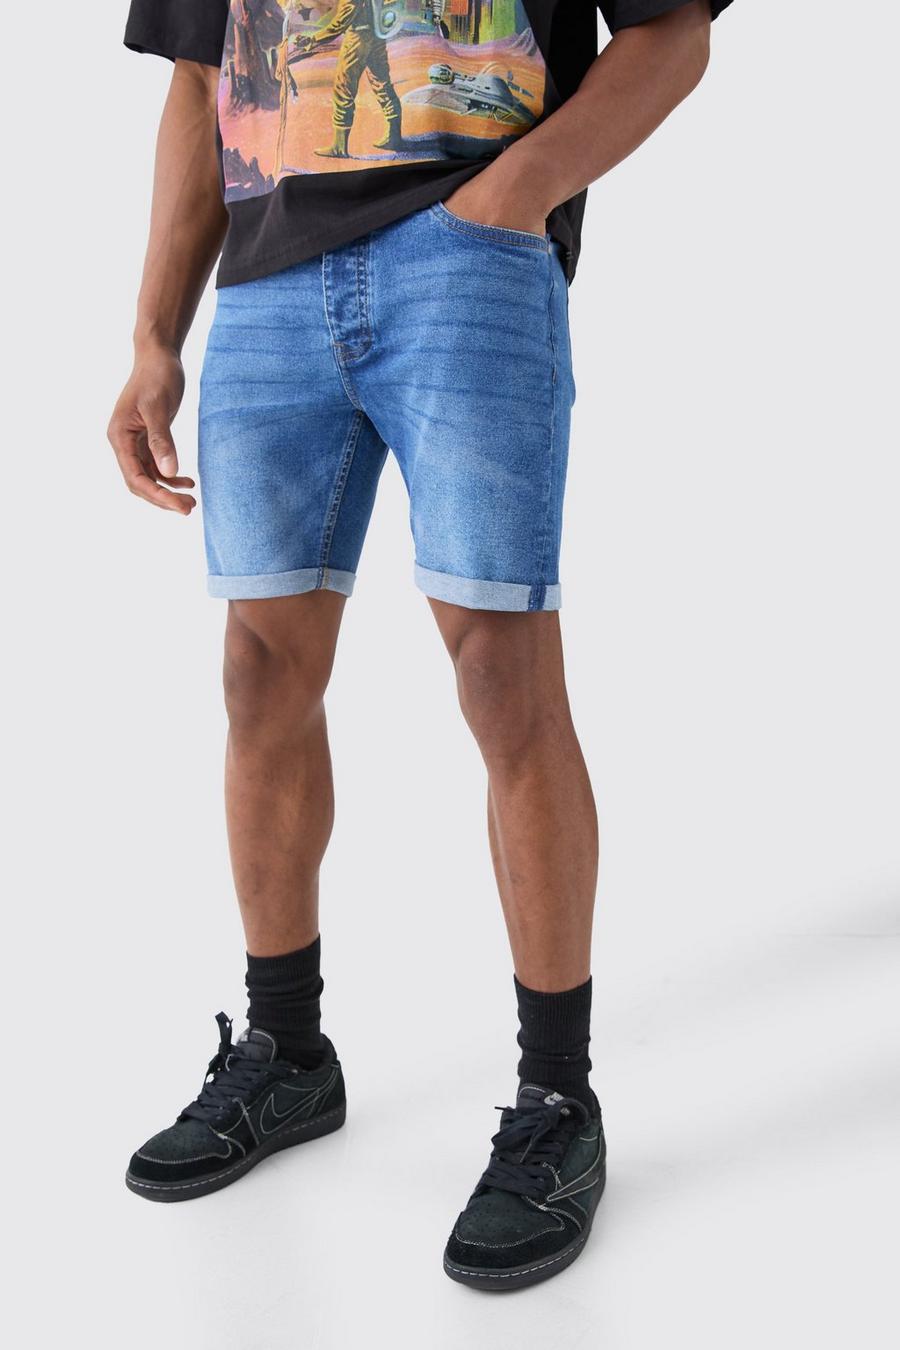 Men Denim Shorts, Size: 30-36, Model Name/Number: Ea at Rs 535 in